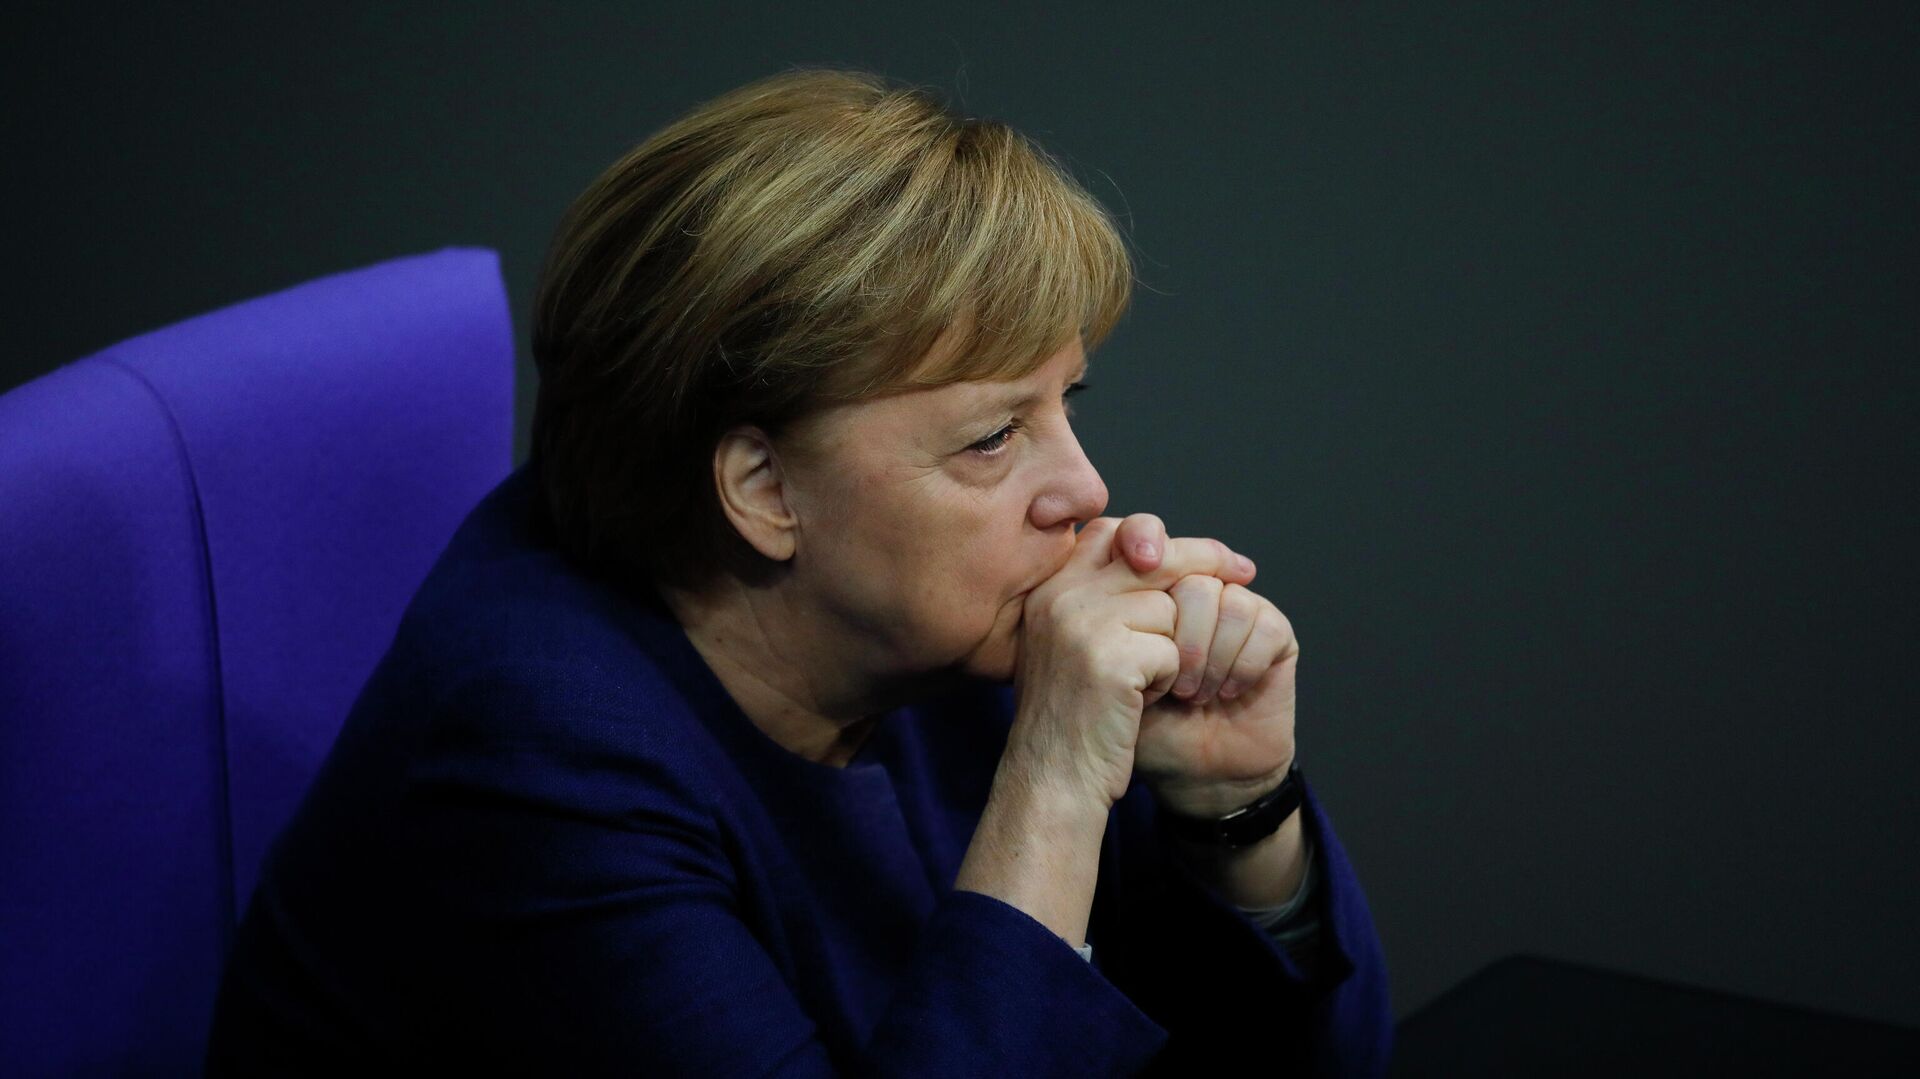 Канцлер Германи Ангела Меркель в Бундестаге, Берлин  - РИА Новости, 1920, 25.05.2021